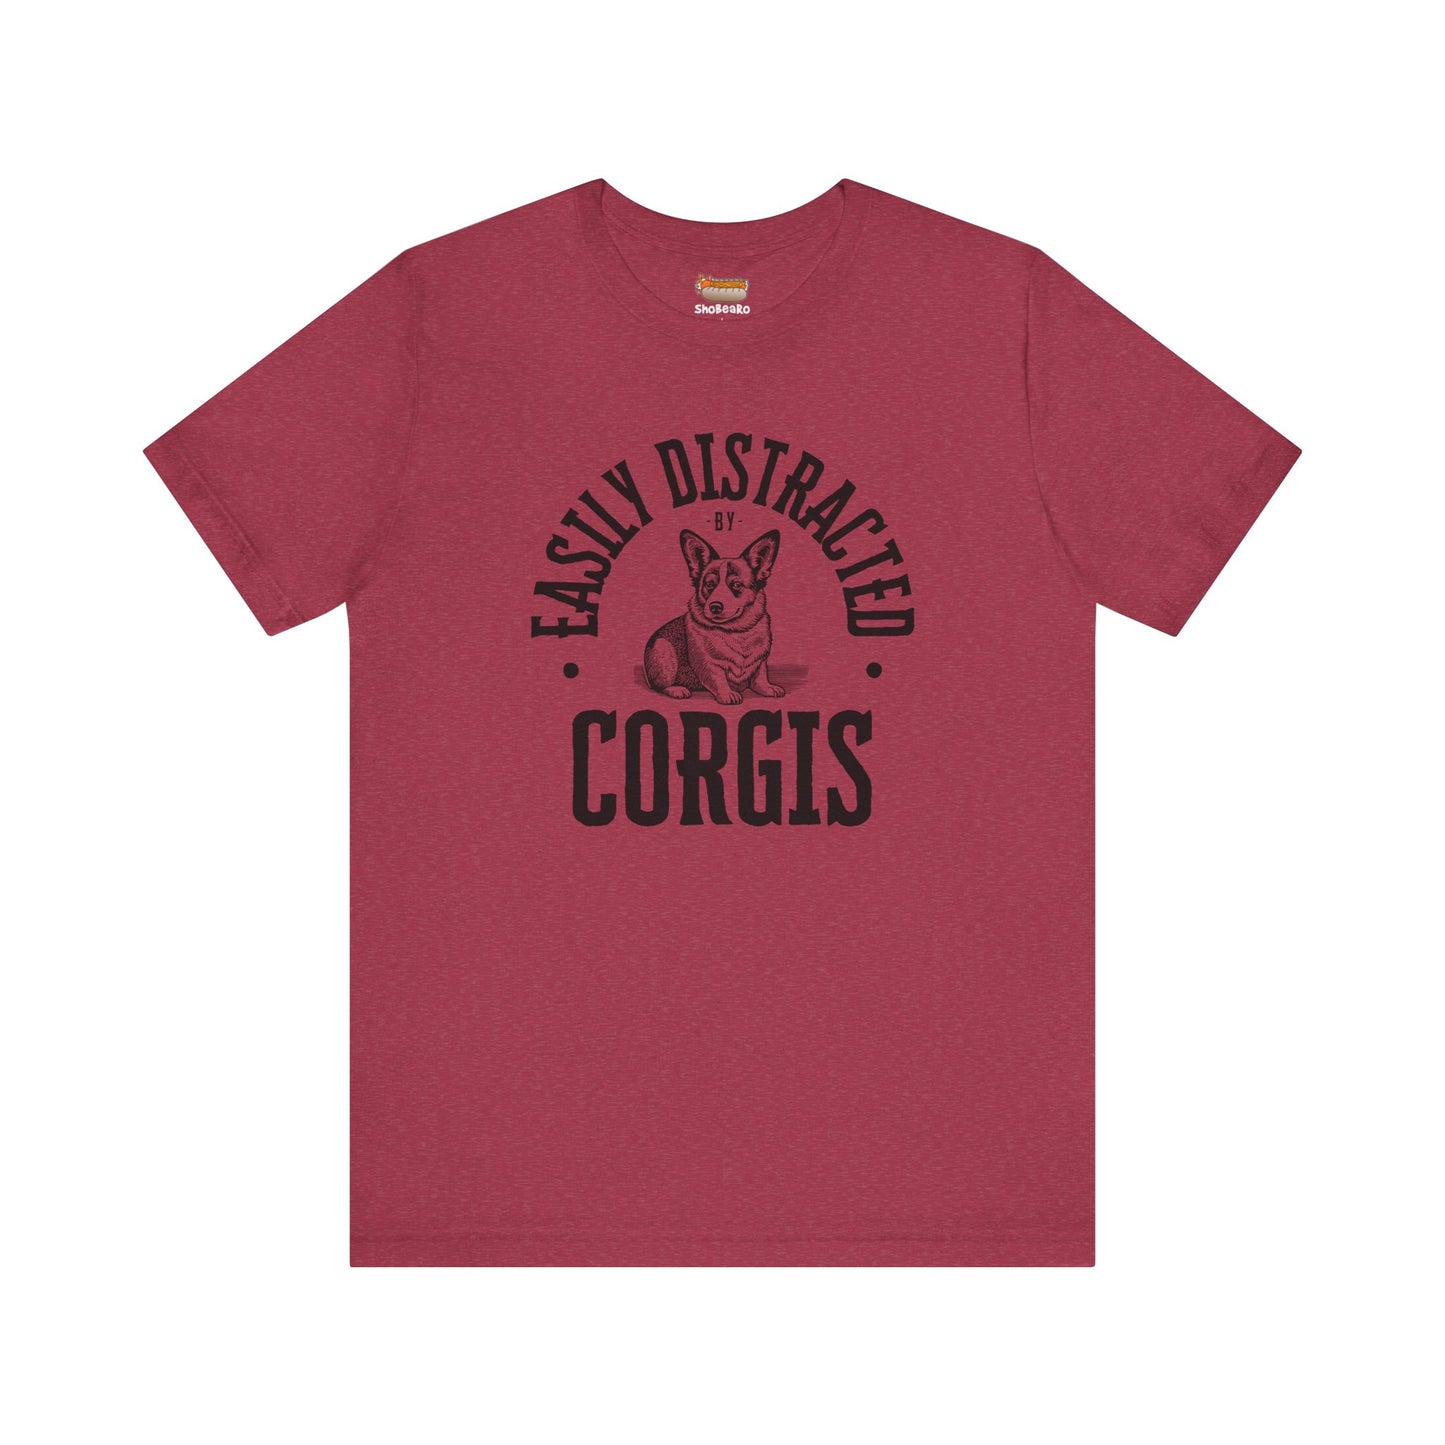 red corgi t-shirt easily distracted women men shirt